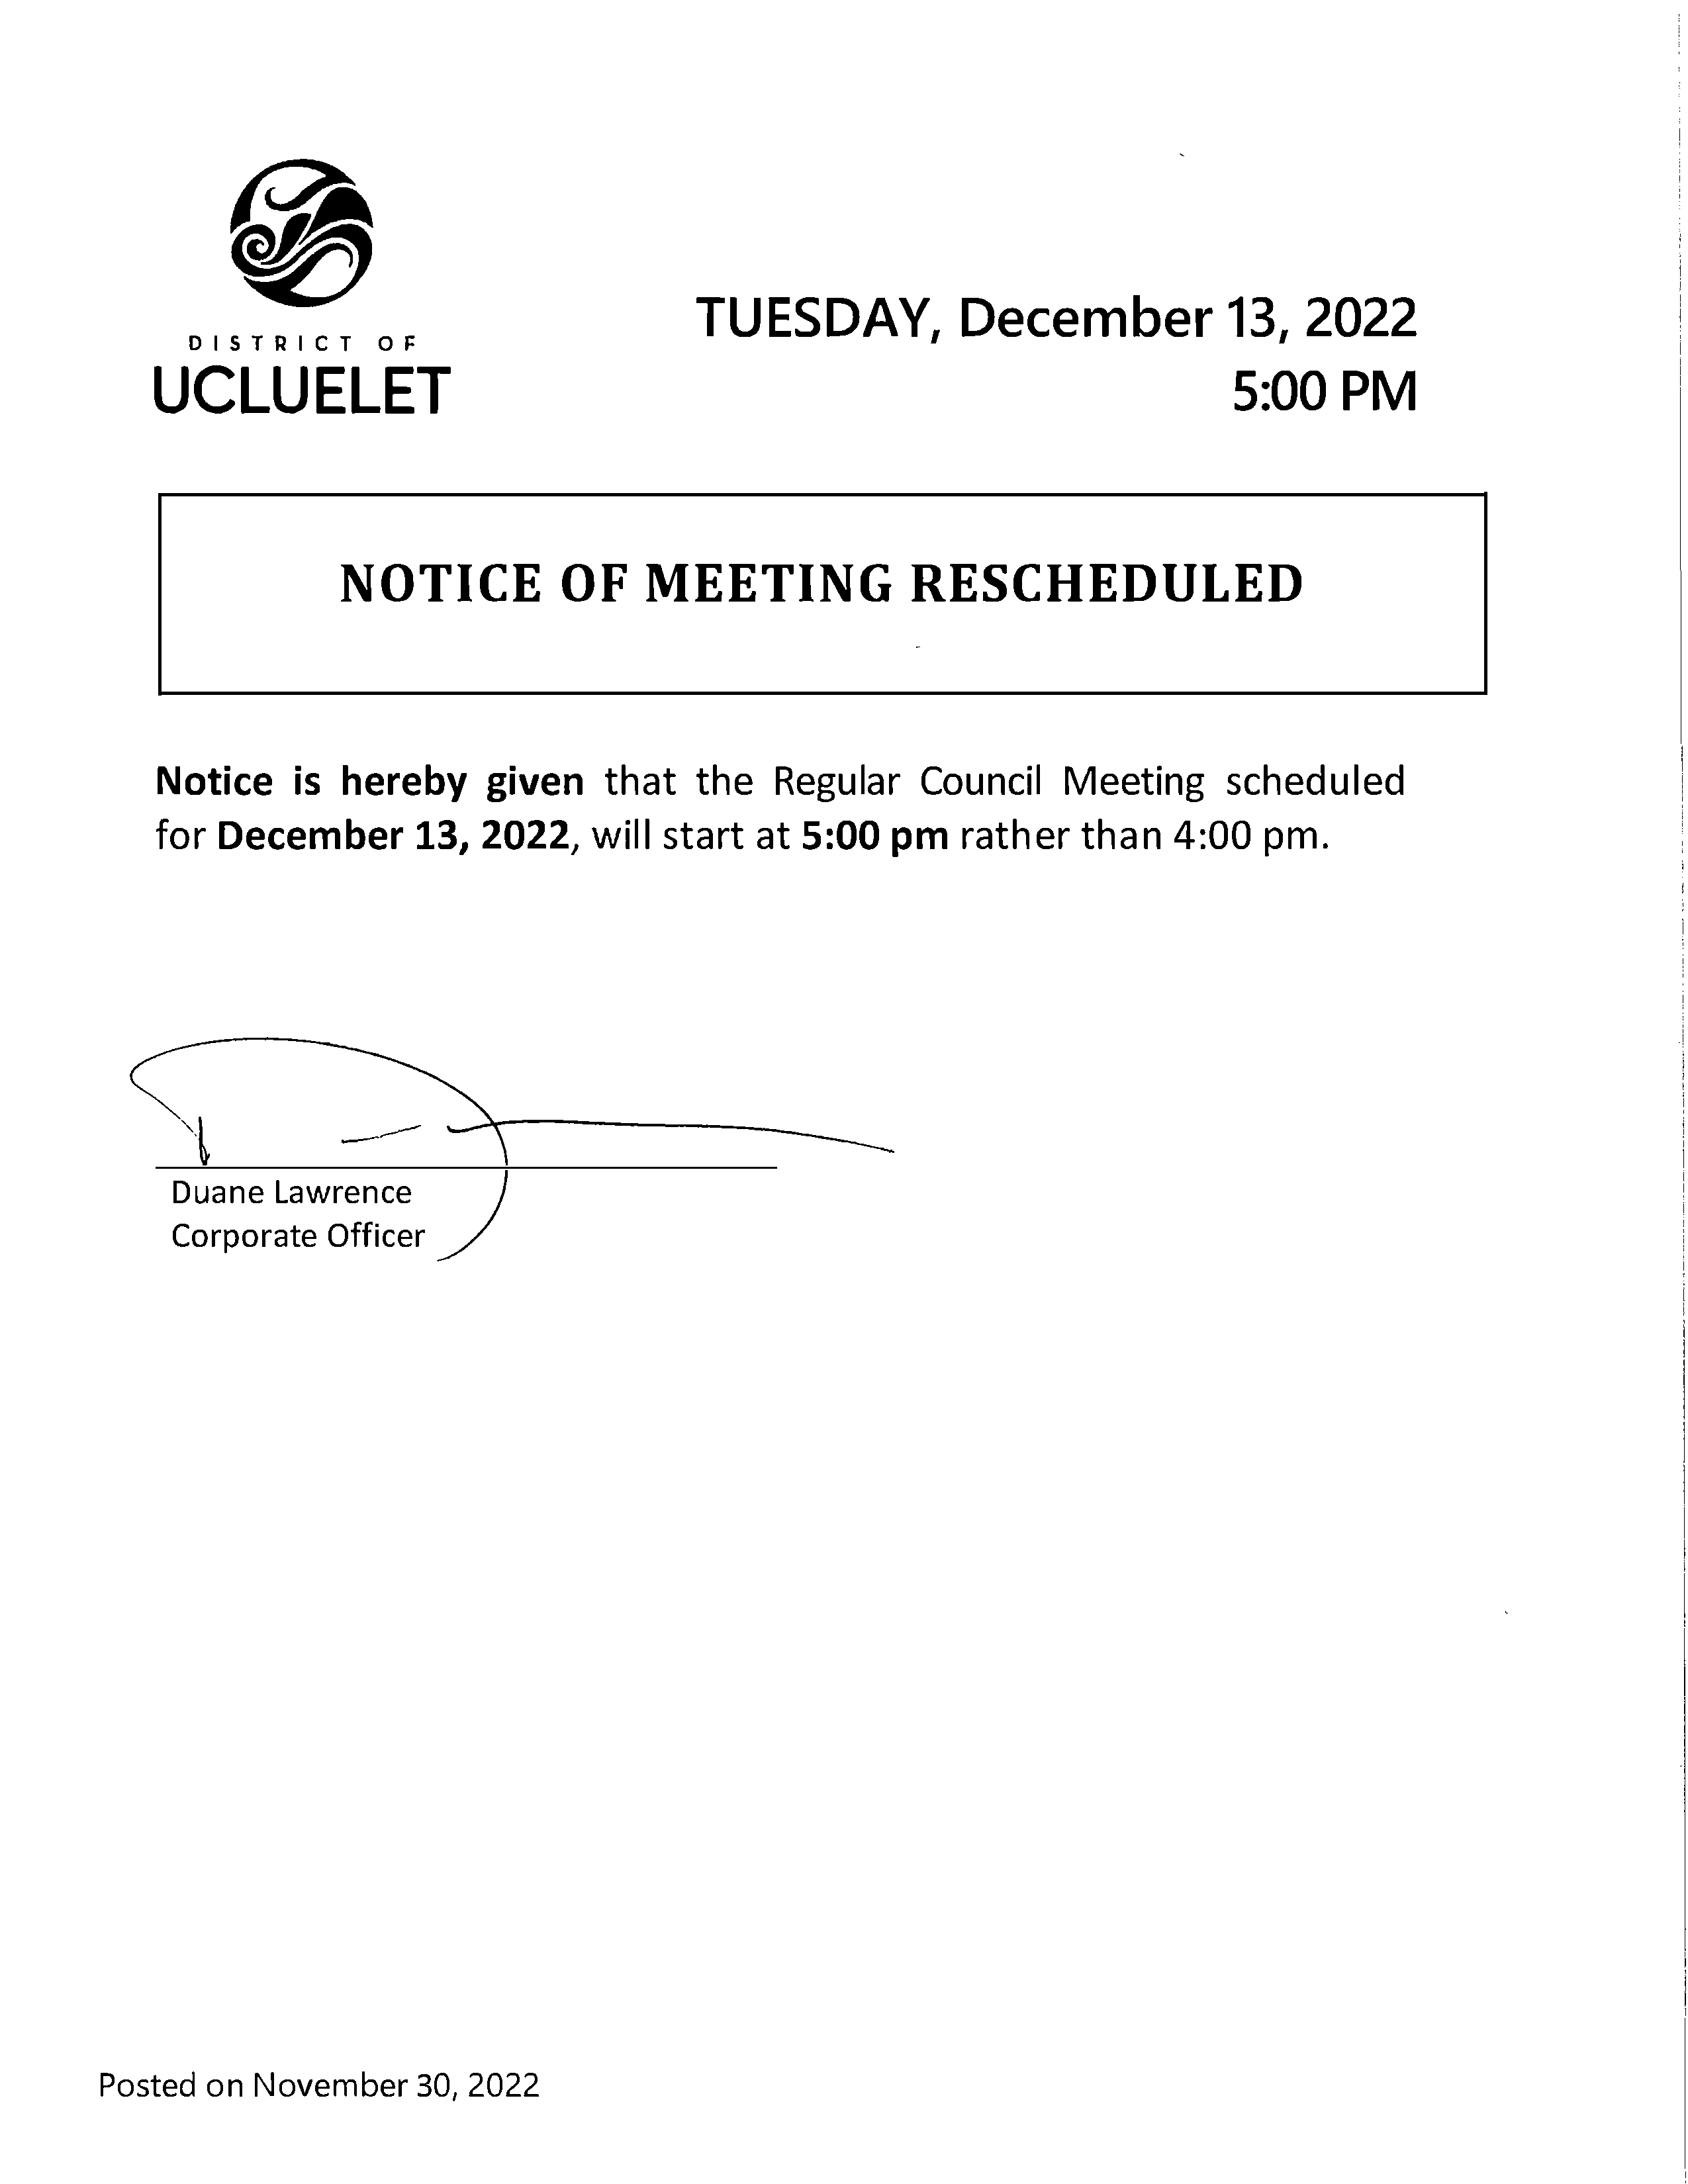 2022 11 30 Notice of Meeting Rescheduled